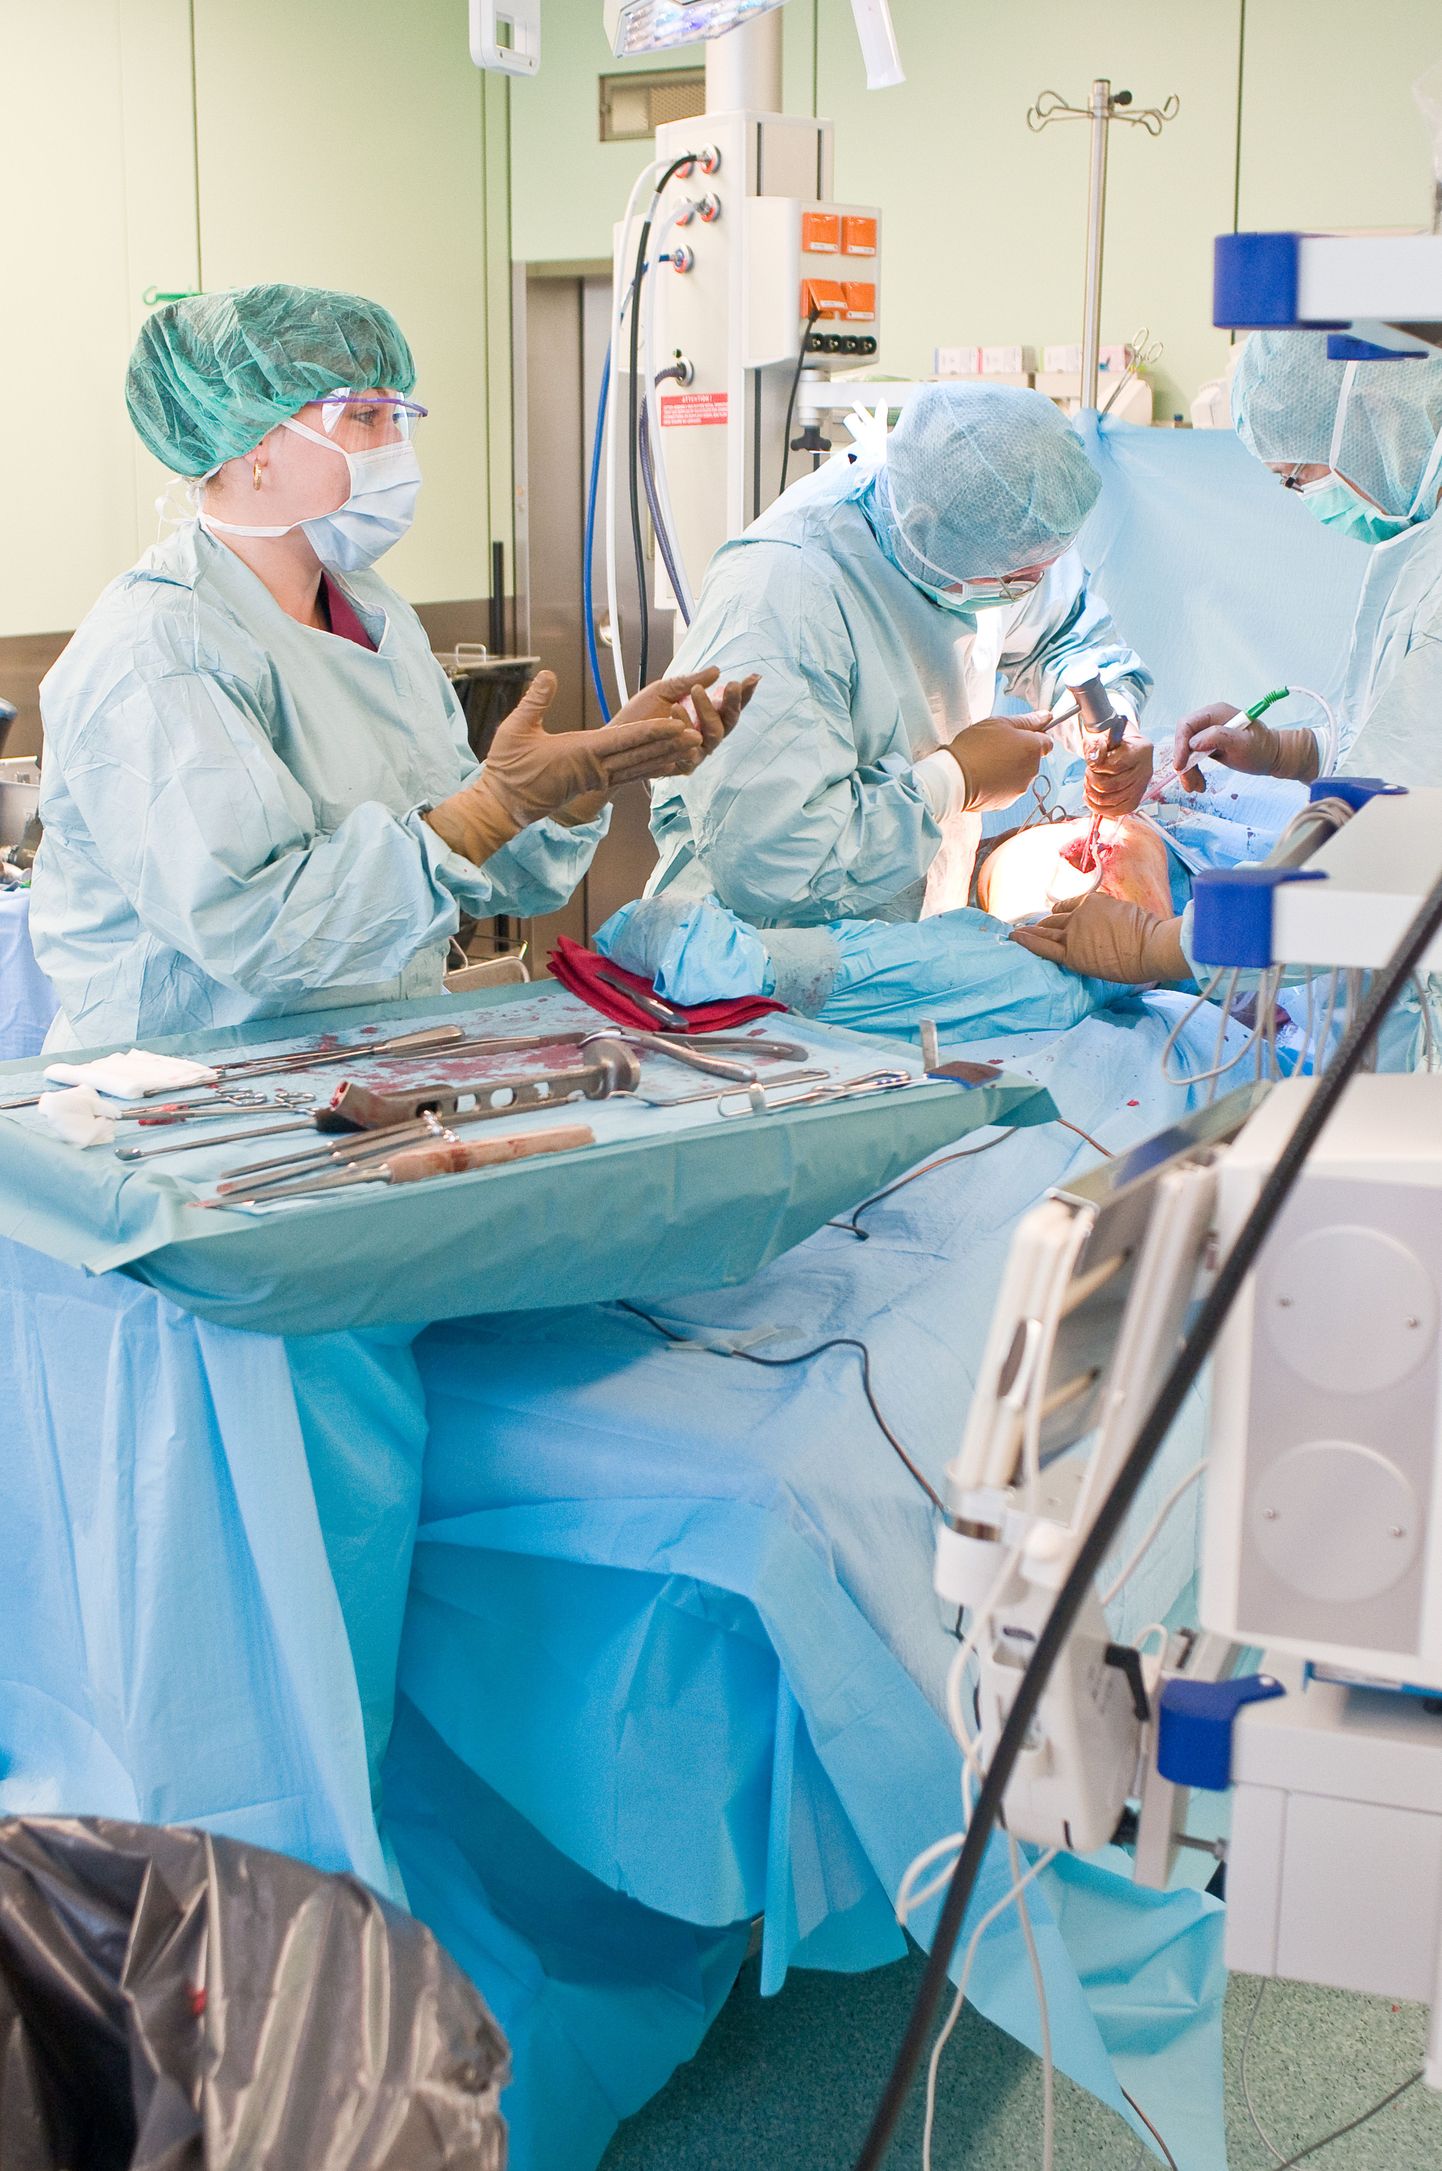 В операционных сделано все для удобства врачей и пациента.